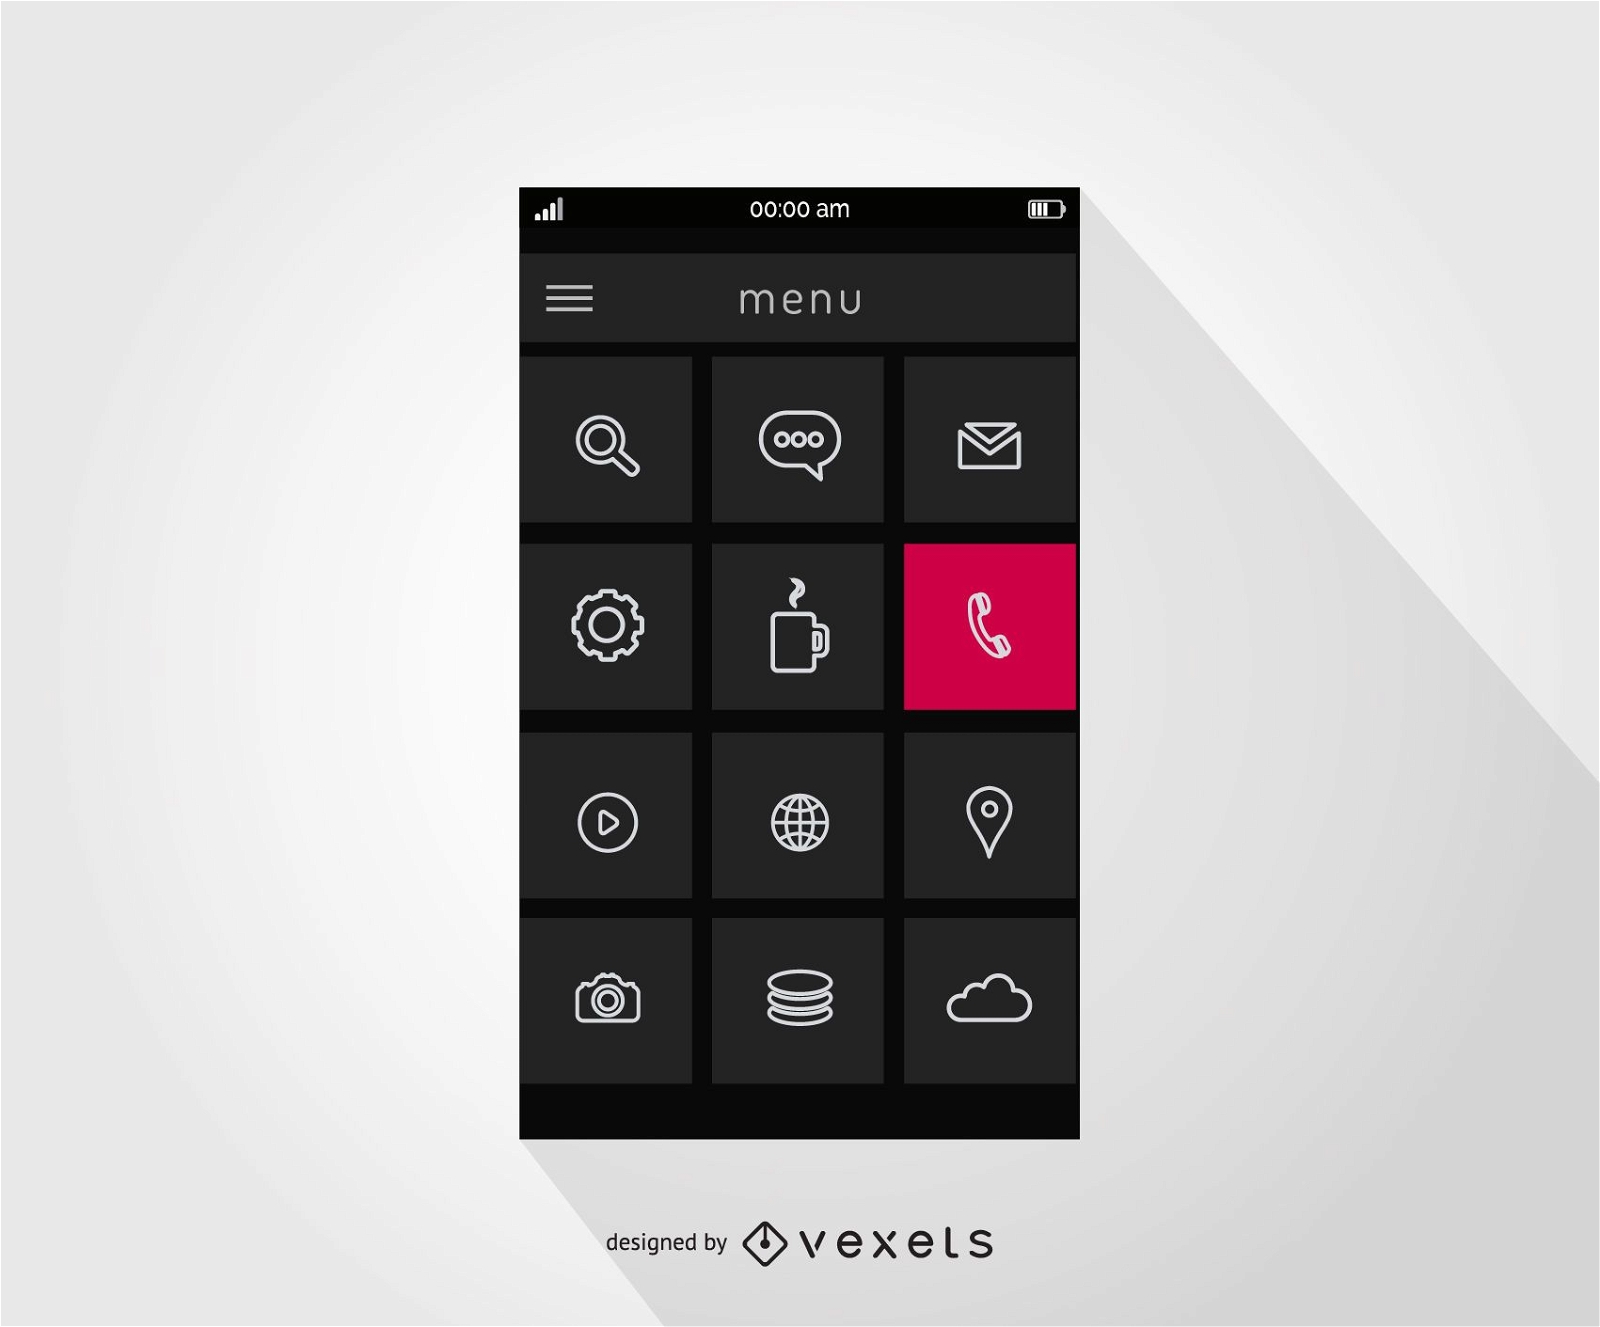 Smartphone menu interface design